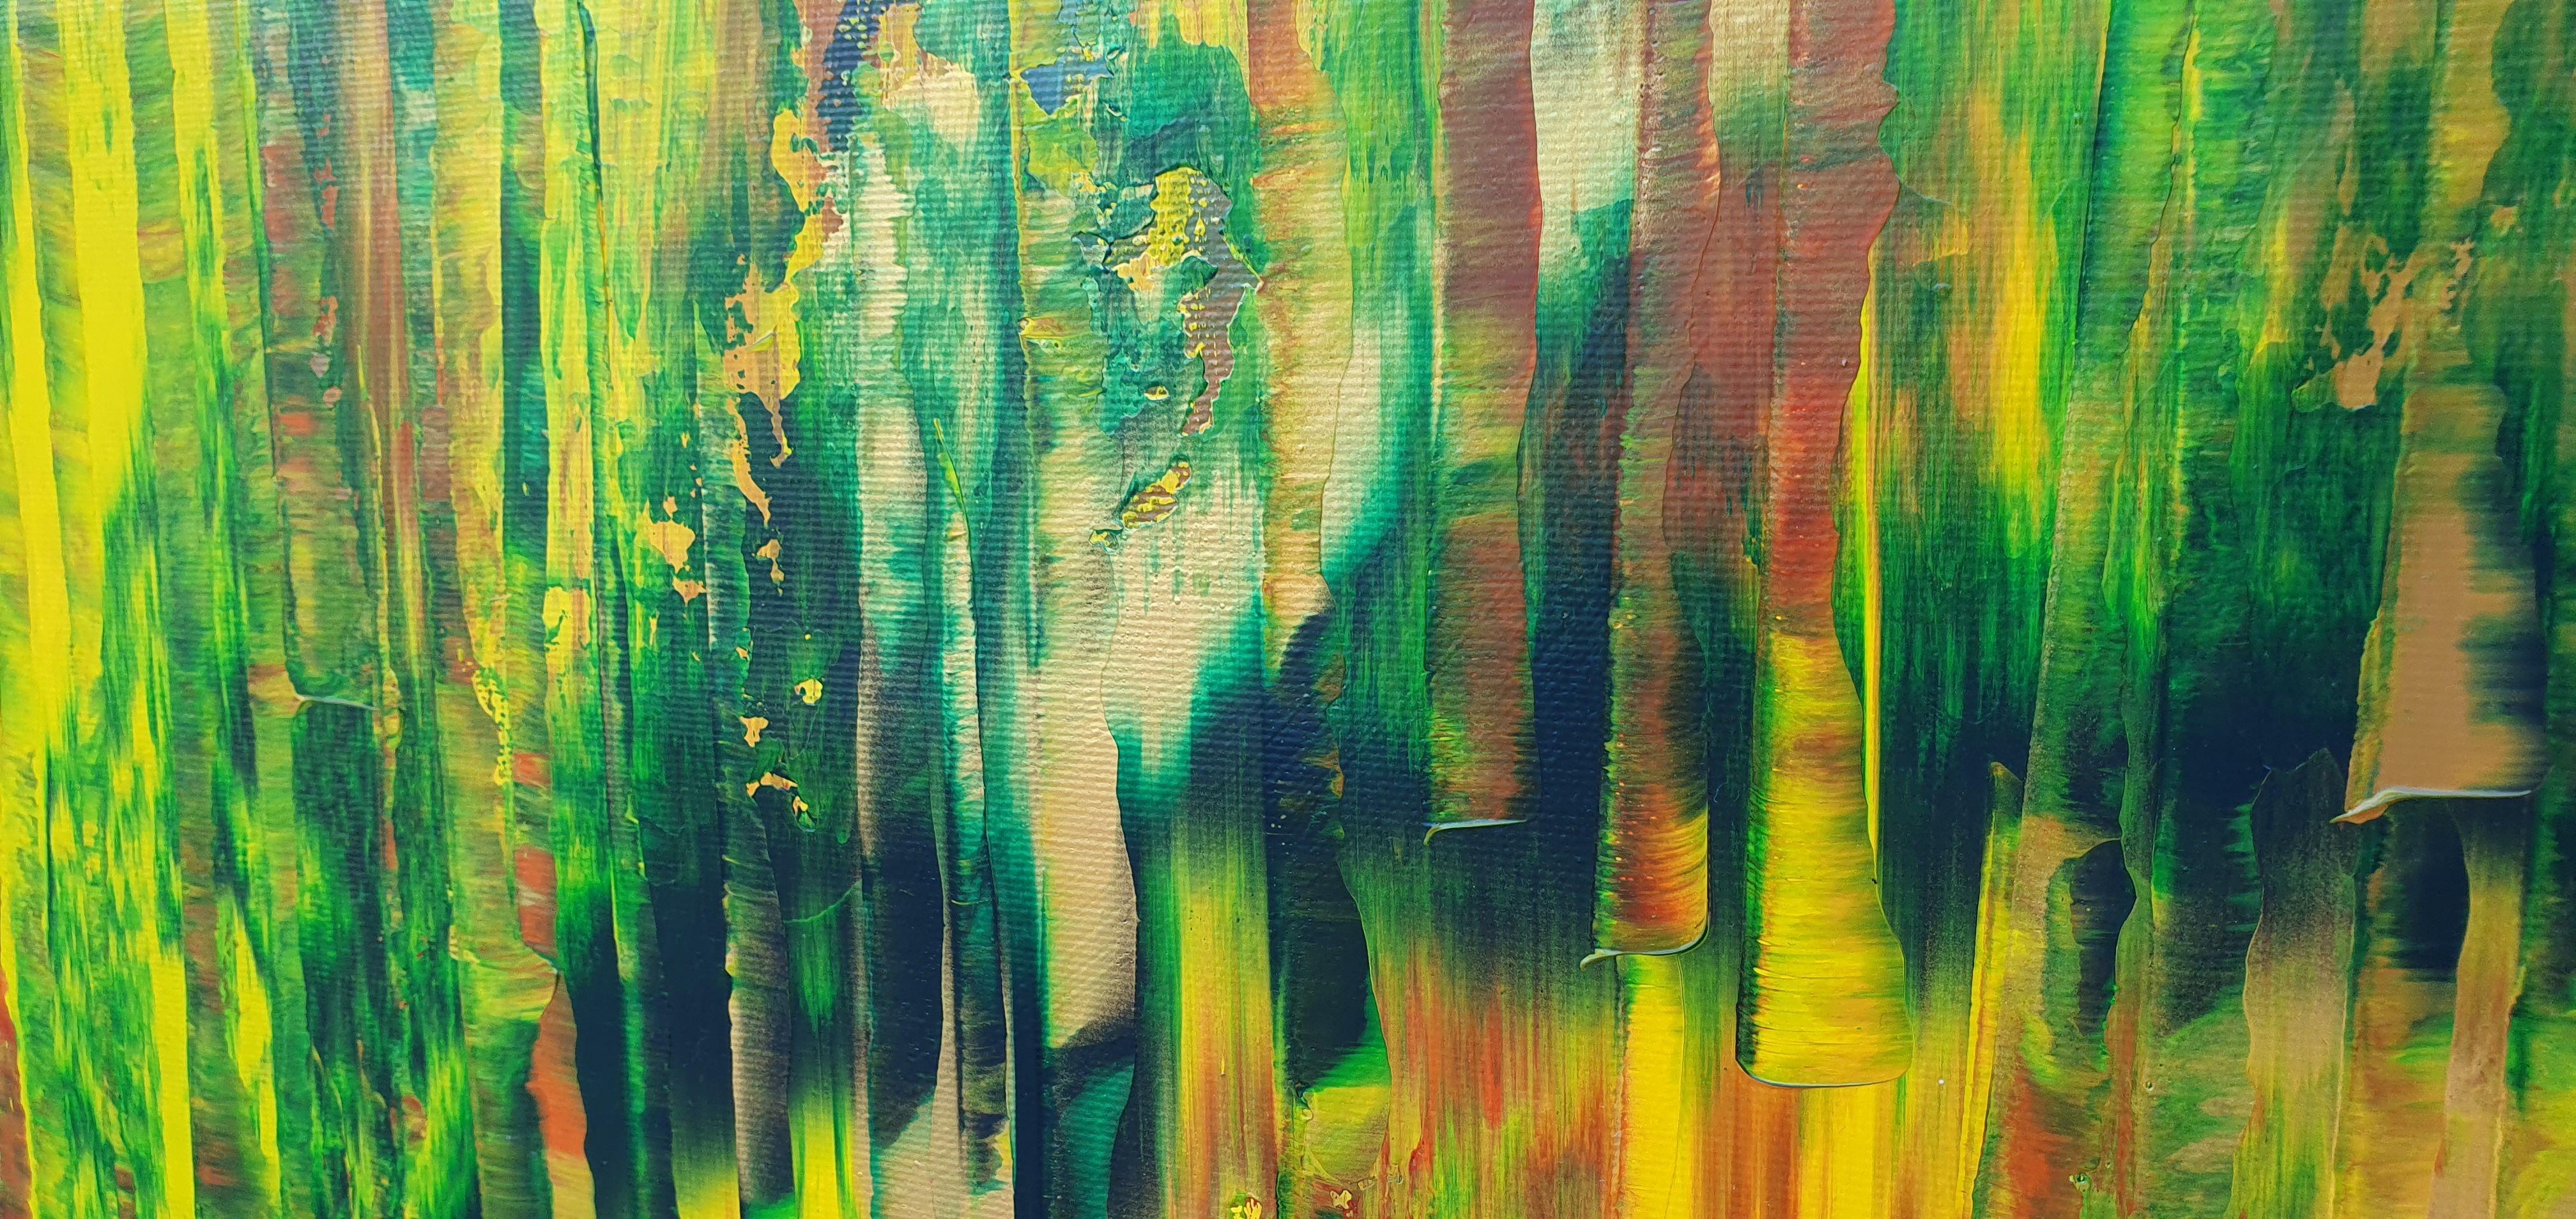 Je vous rencontrerai dans la forêt, peinture, acrylique sur toile - Painting de Ivana Olbricht